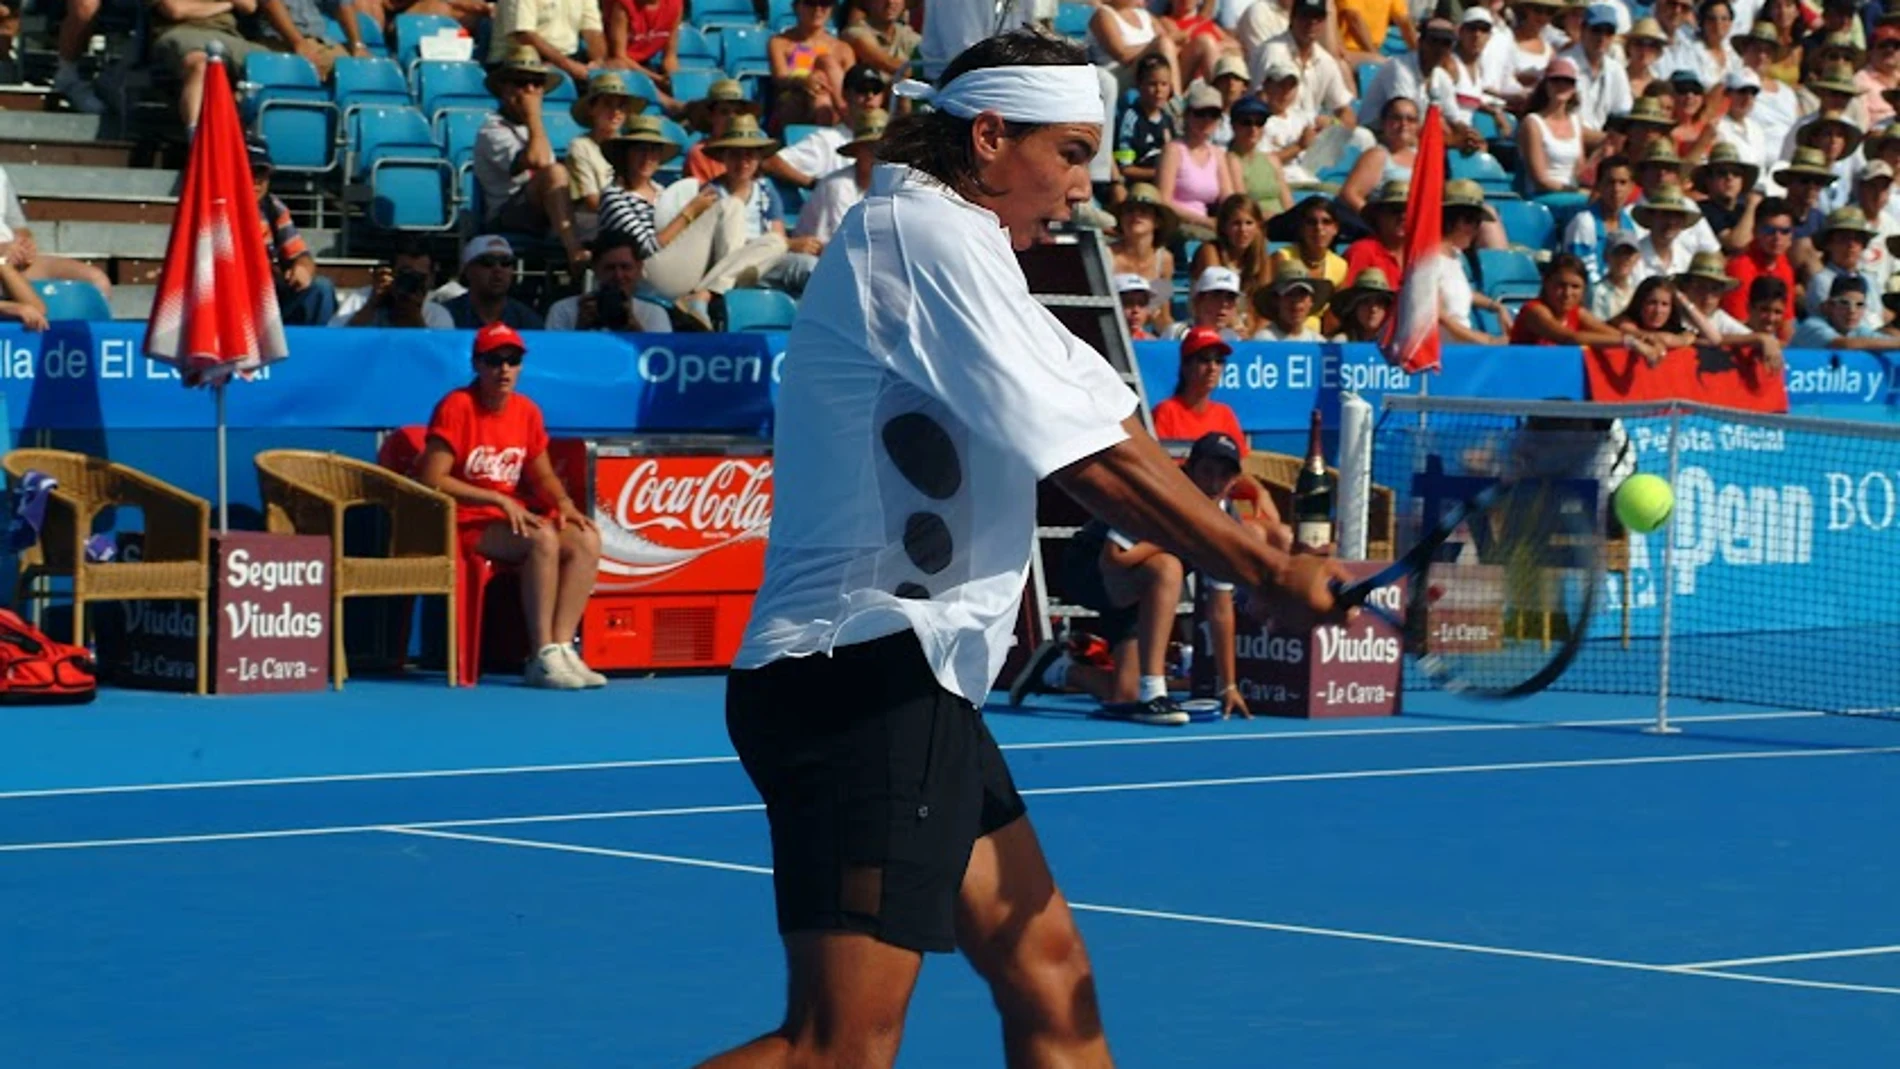 Rafa Nadal, jugando el torneo de El Espinar en 2003